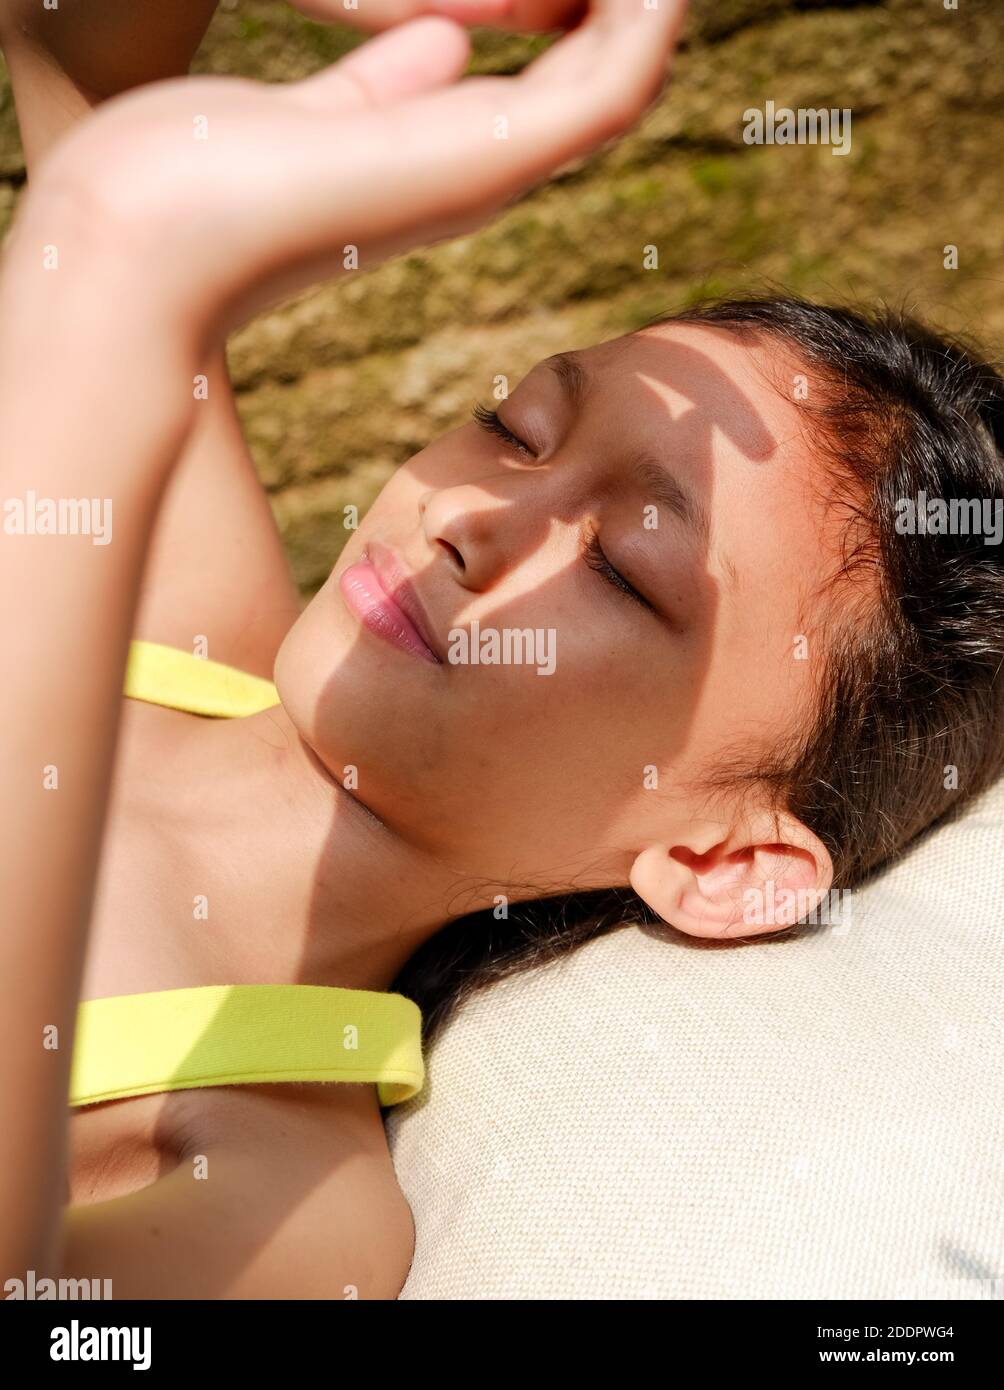 Jolie petite fille d'origine asiatique couchée sur un banc, prenant un bain de soleil le matin à la maison. Elle se lève la main pour couvrir son visage de la lumière intense du soleil Banque D'Images